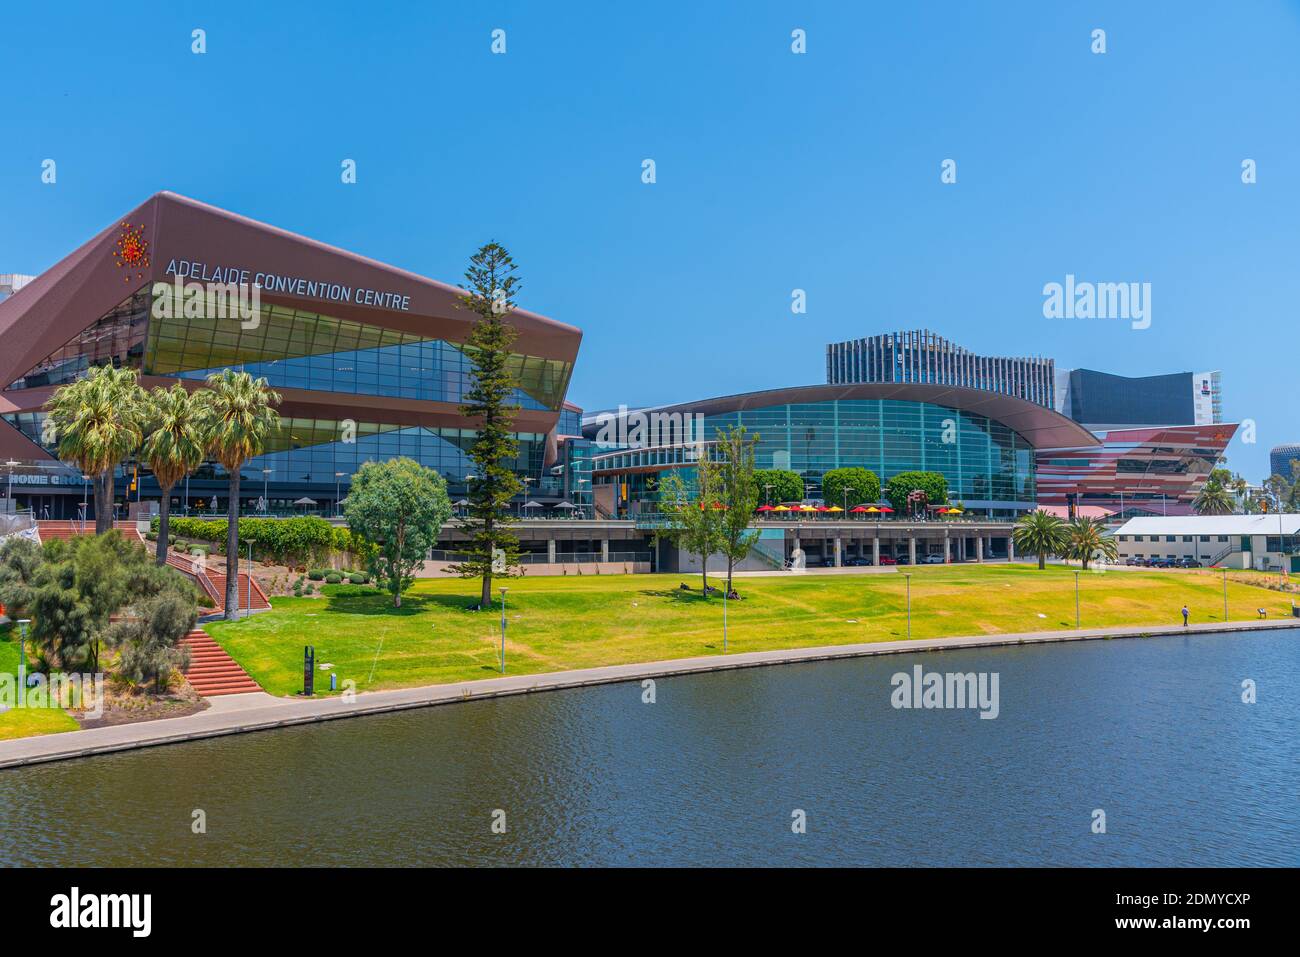 ADELAIDE, AUSTRALIEN, 7. JANUAR 2020: Adelaide Convention Center am Riverside of Torrens in Australien Stockfoto